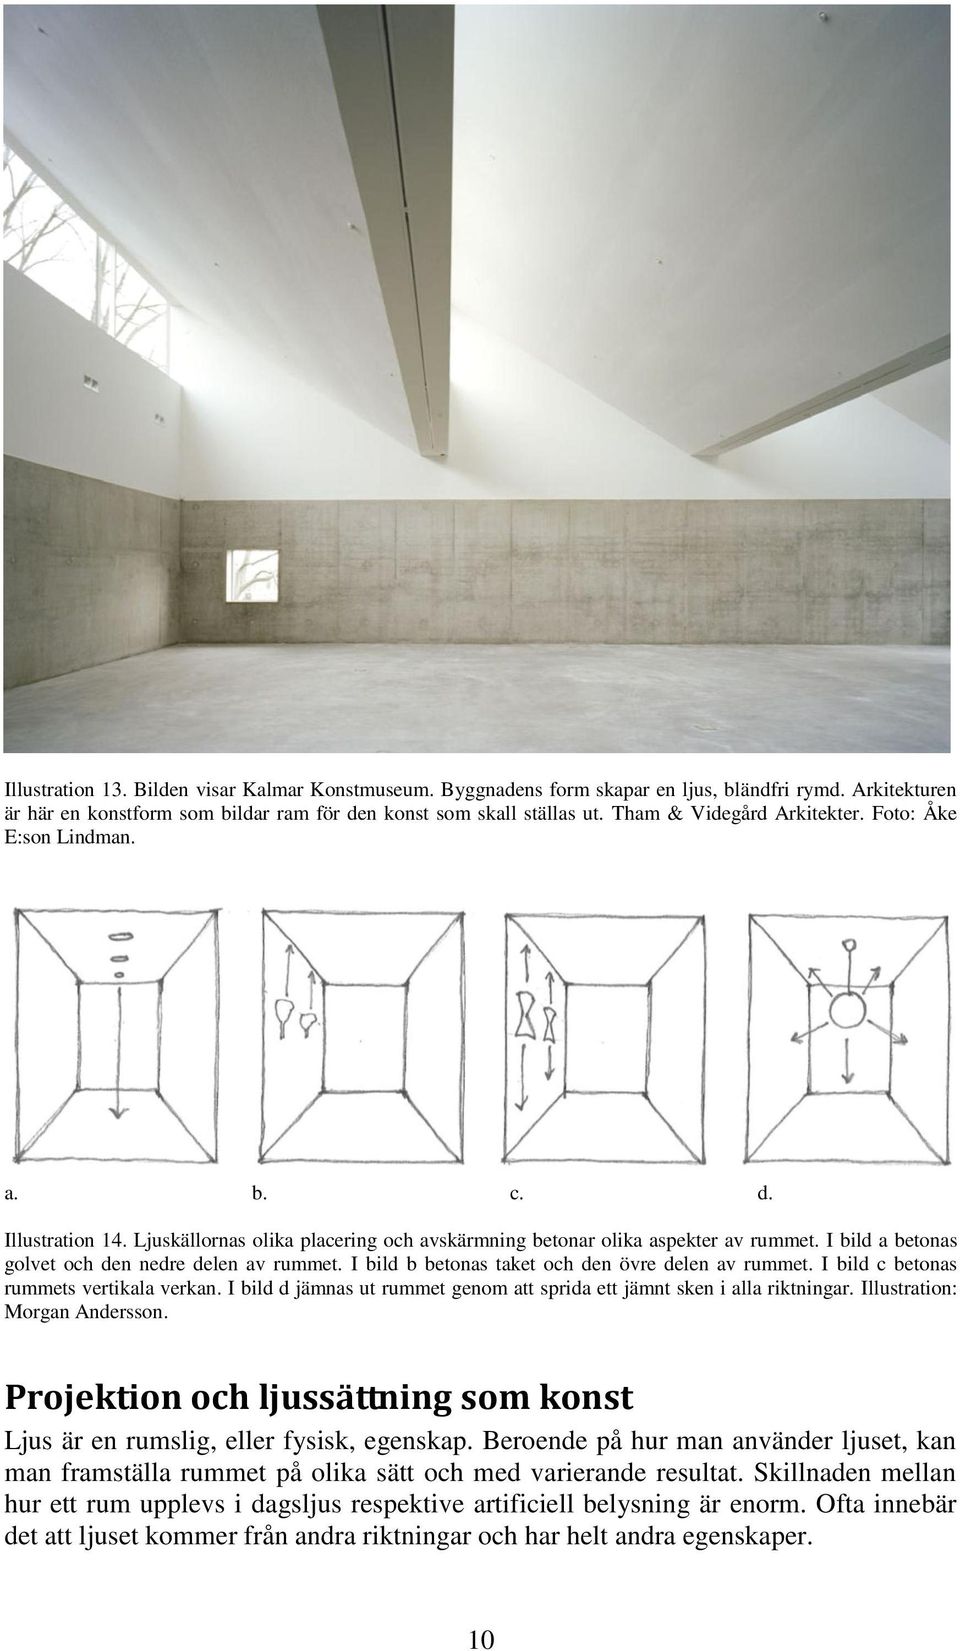 I bild a betonas golvet och den nedre delen av rummet. I bild b betonas taket och den övre delen av rummet. I bild c betonas rummets vertikala verkan.